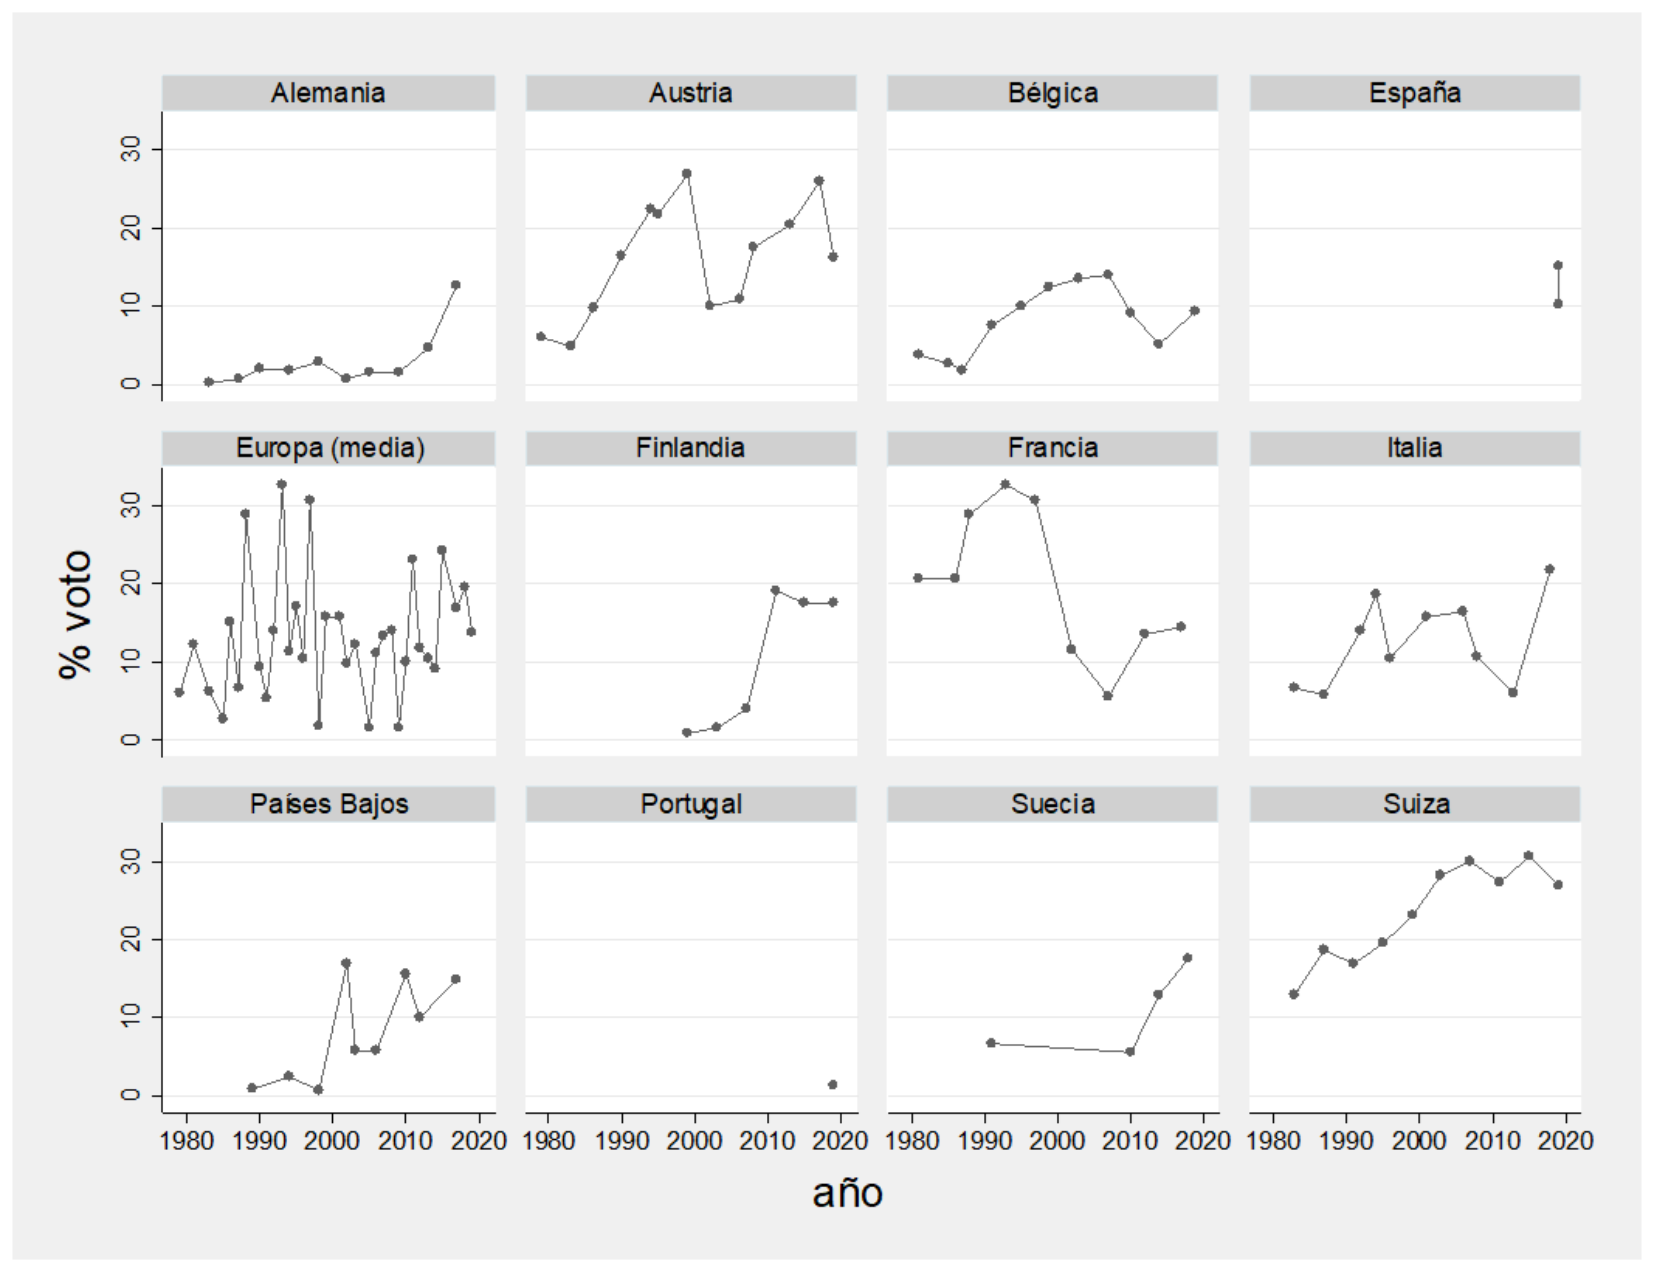 Resultados electorales de partidos de derecha radical en Europa en elecciones nacionales (1980-2020).